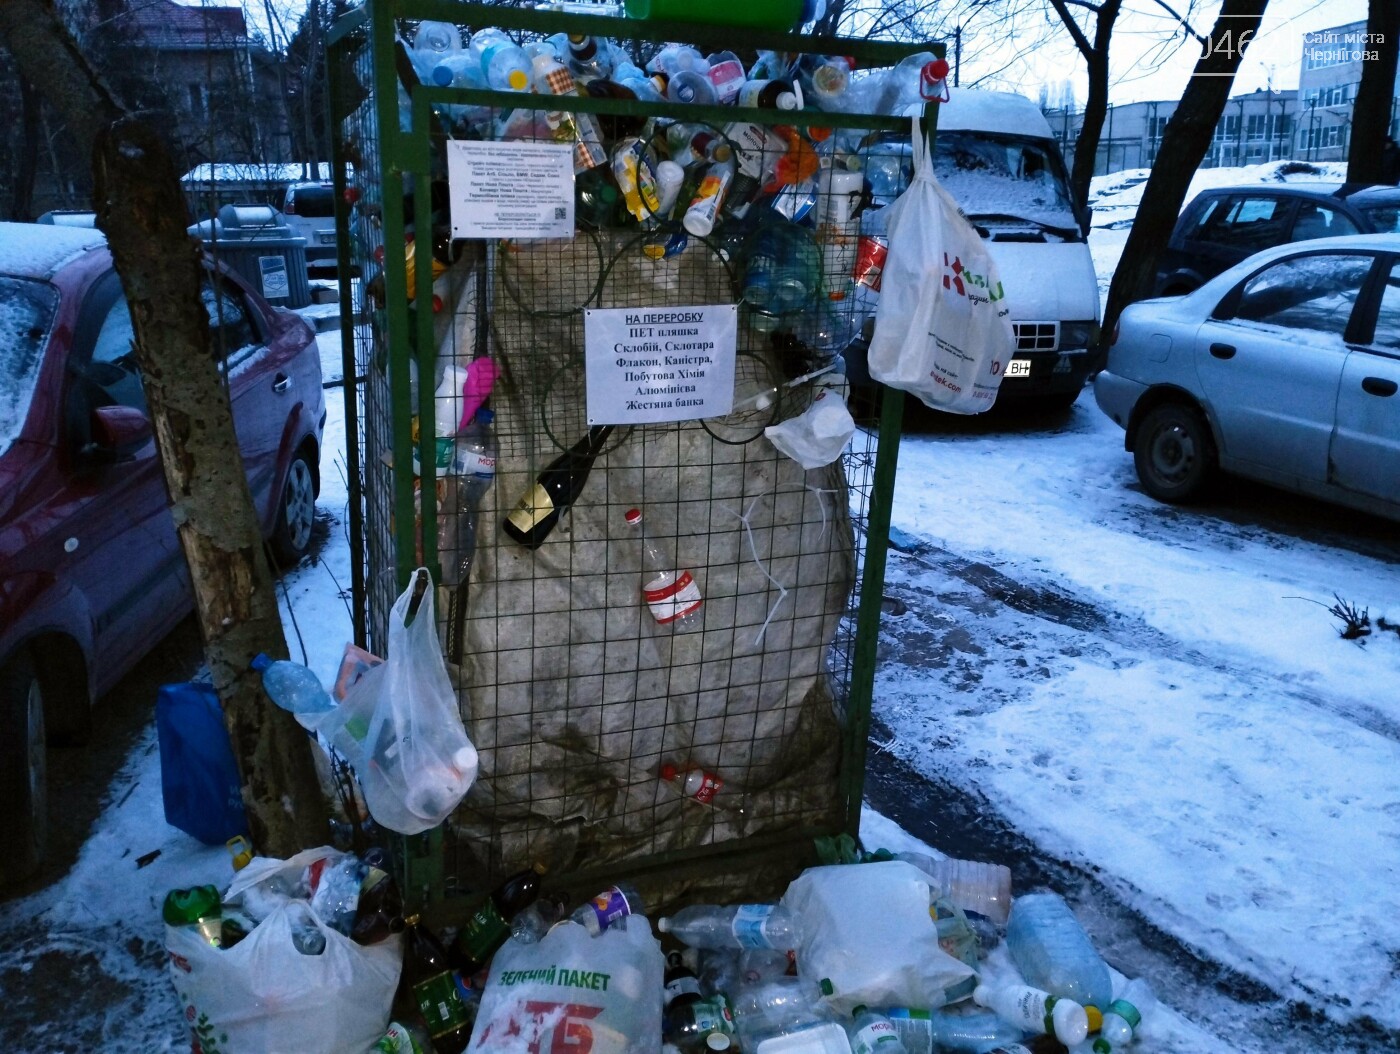 Здається, що попит на сортування сміття у Чернігові перевищує пропозицію